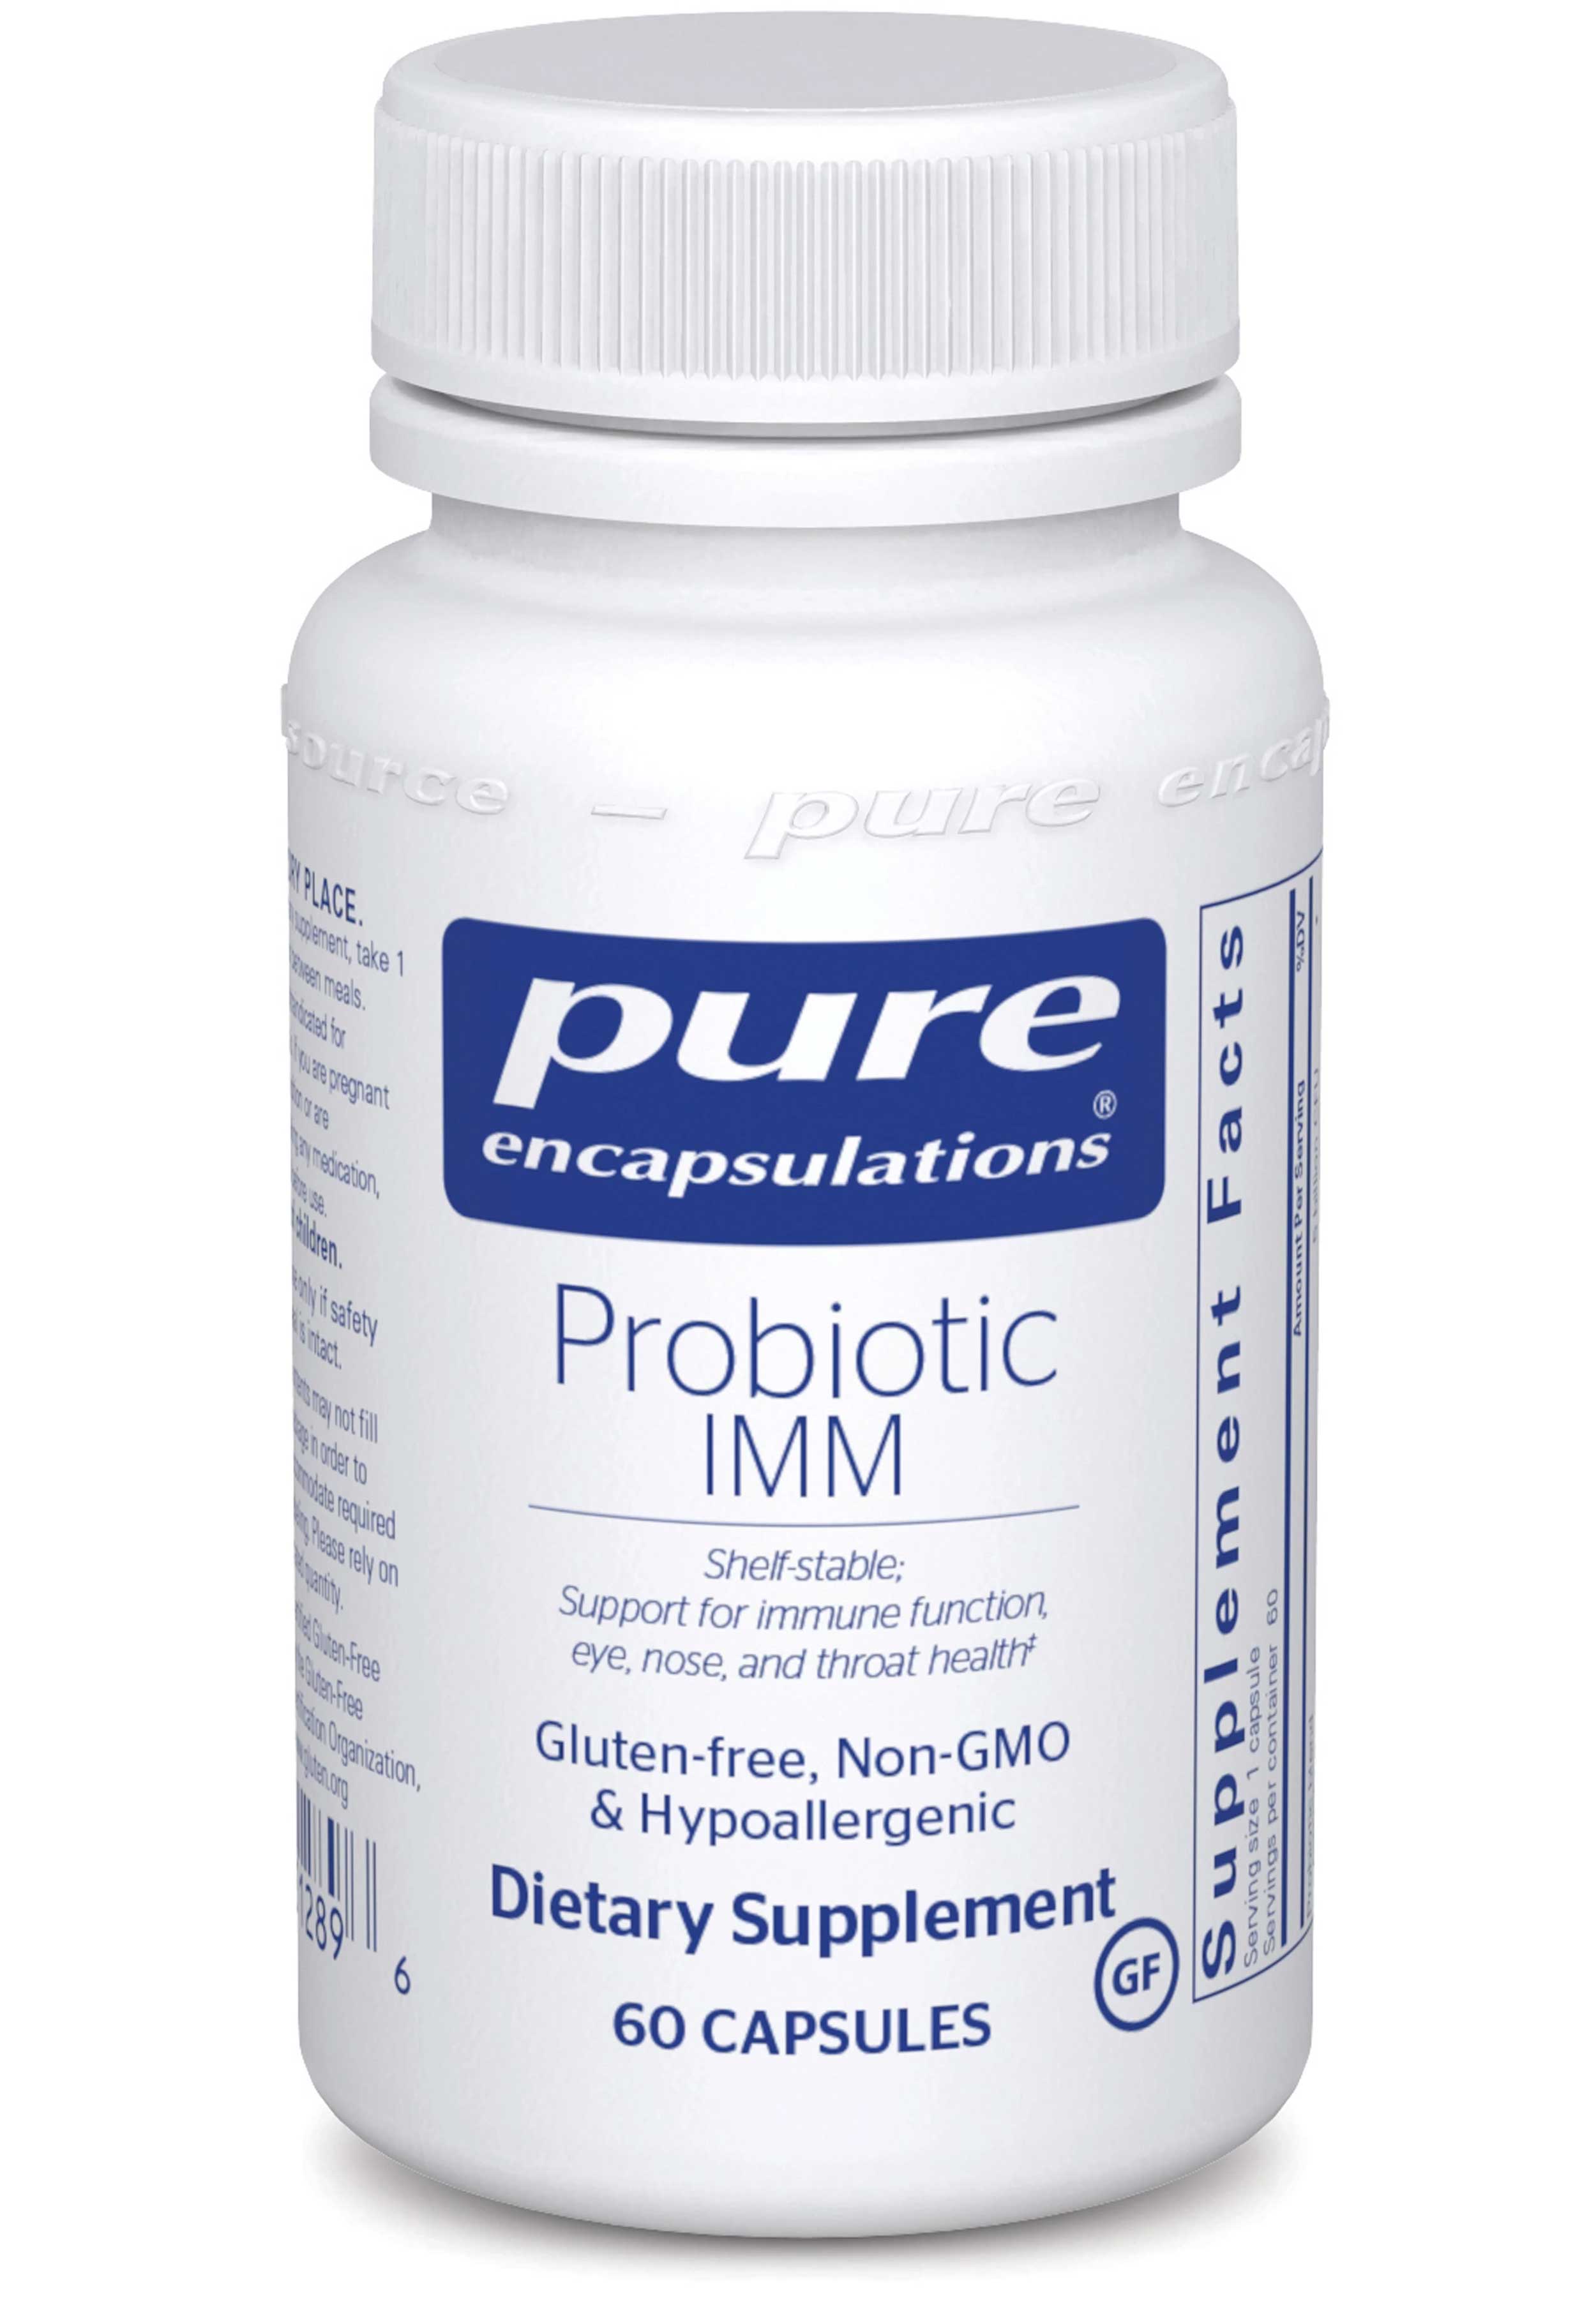 Pure Encapsulations Probiotic IMM